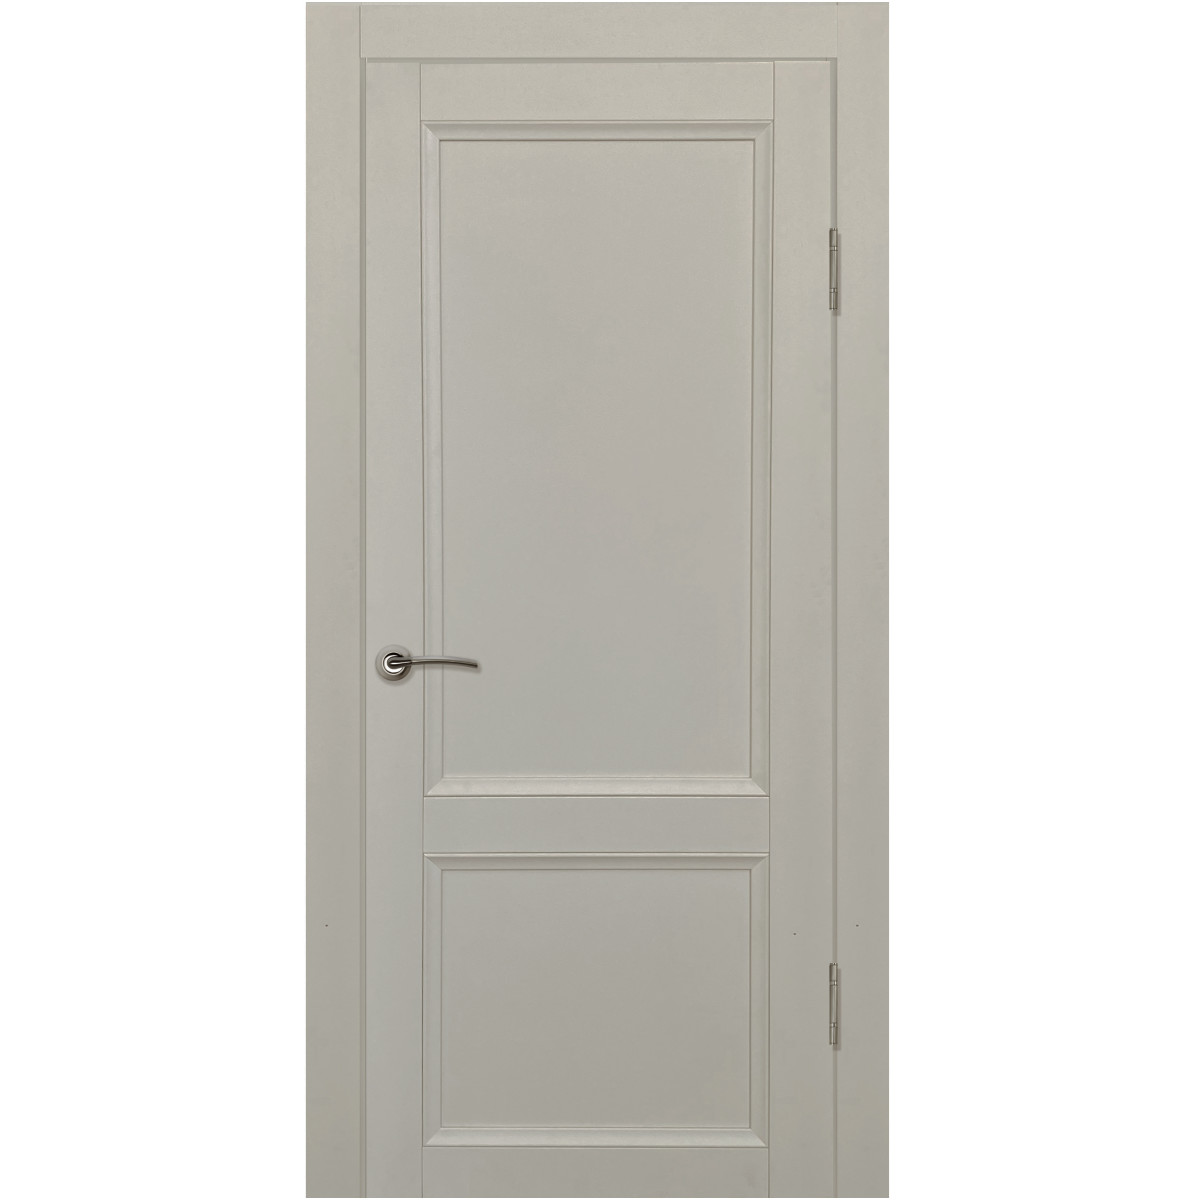 Дверь межкомнатная глухая с замком и петлями в комплекте Рондо 90x200 см Hardflex цвет серый жемчуг